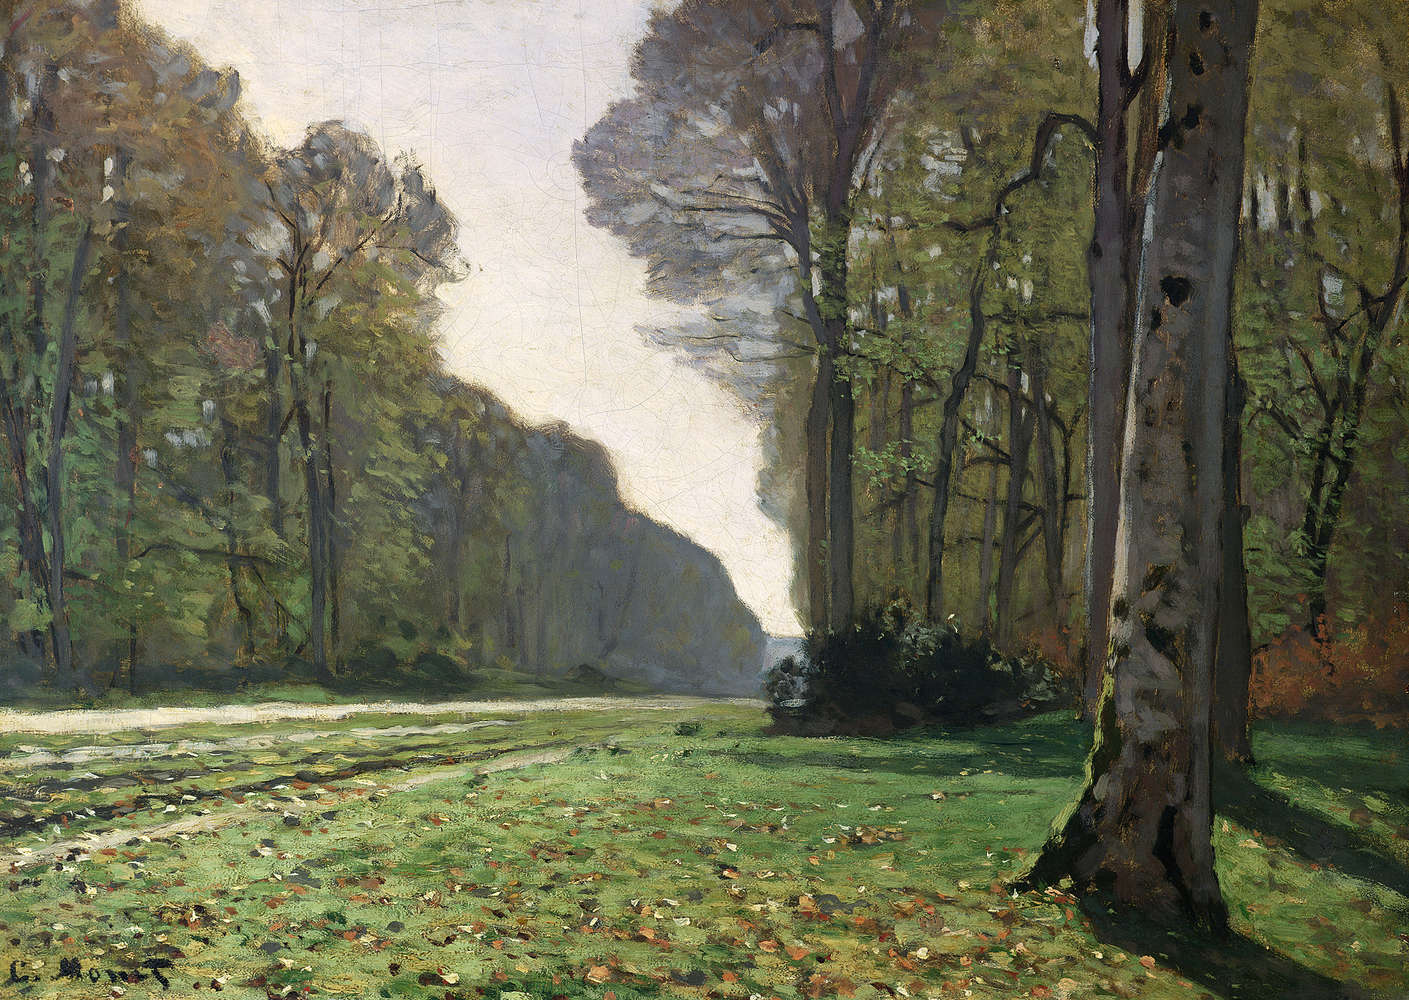             Fototapete "Der Weg nach BasBreauFontainebleau" von Claude Monet
        